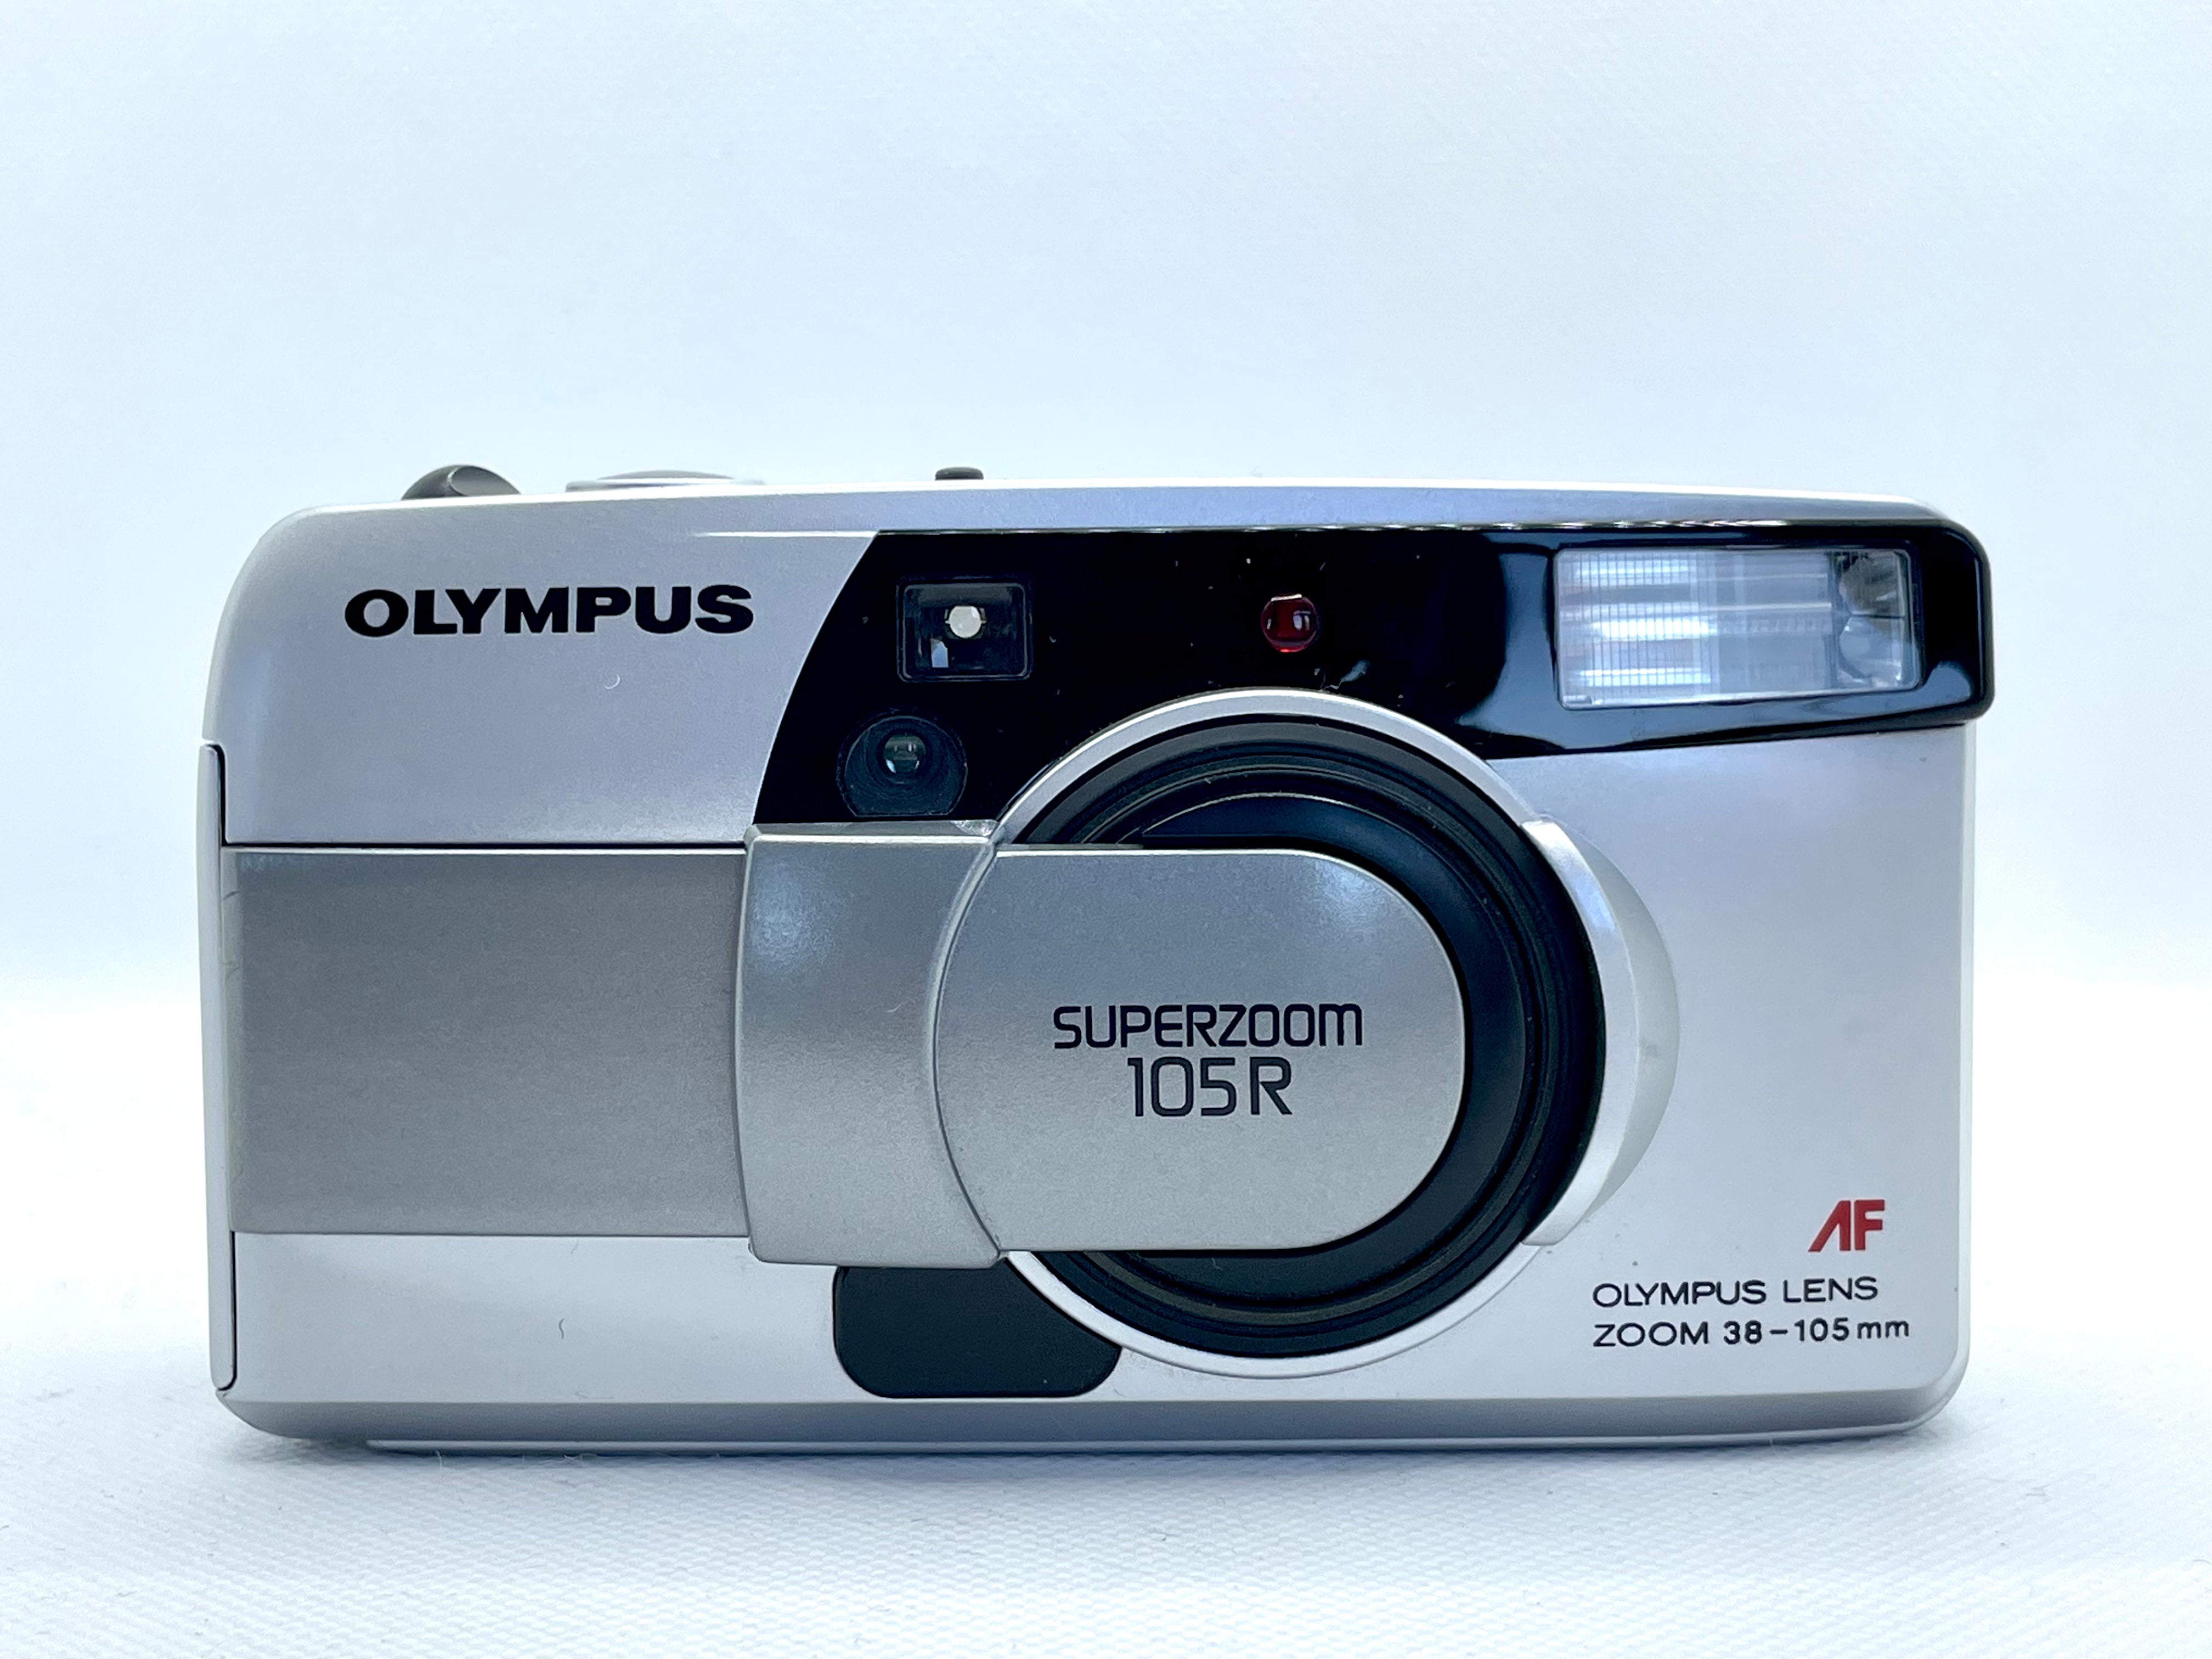 Olympus Superzoom 105R